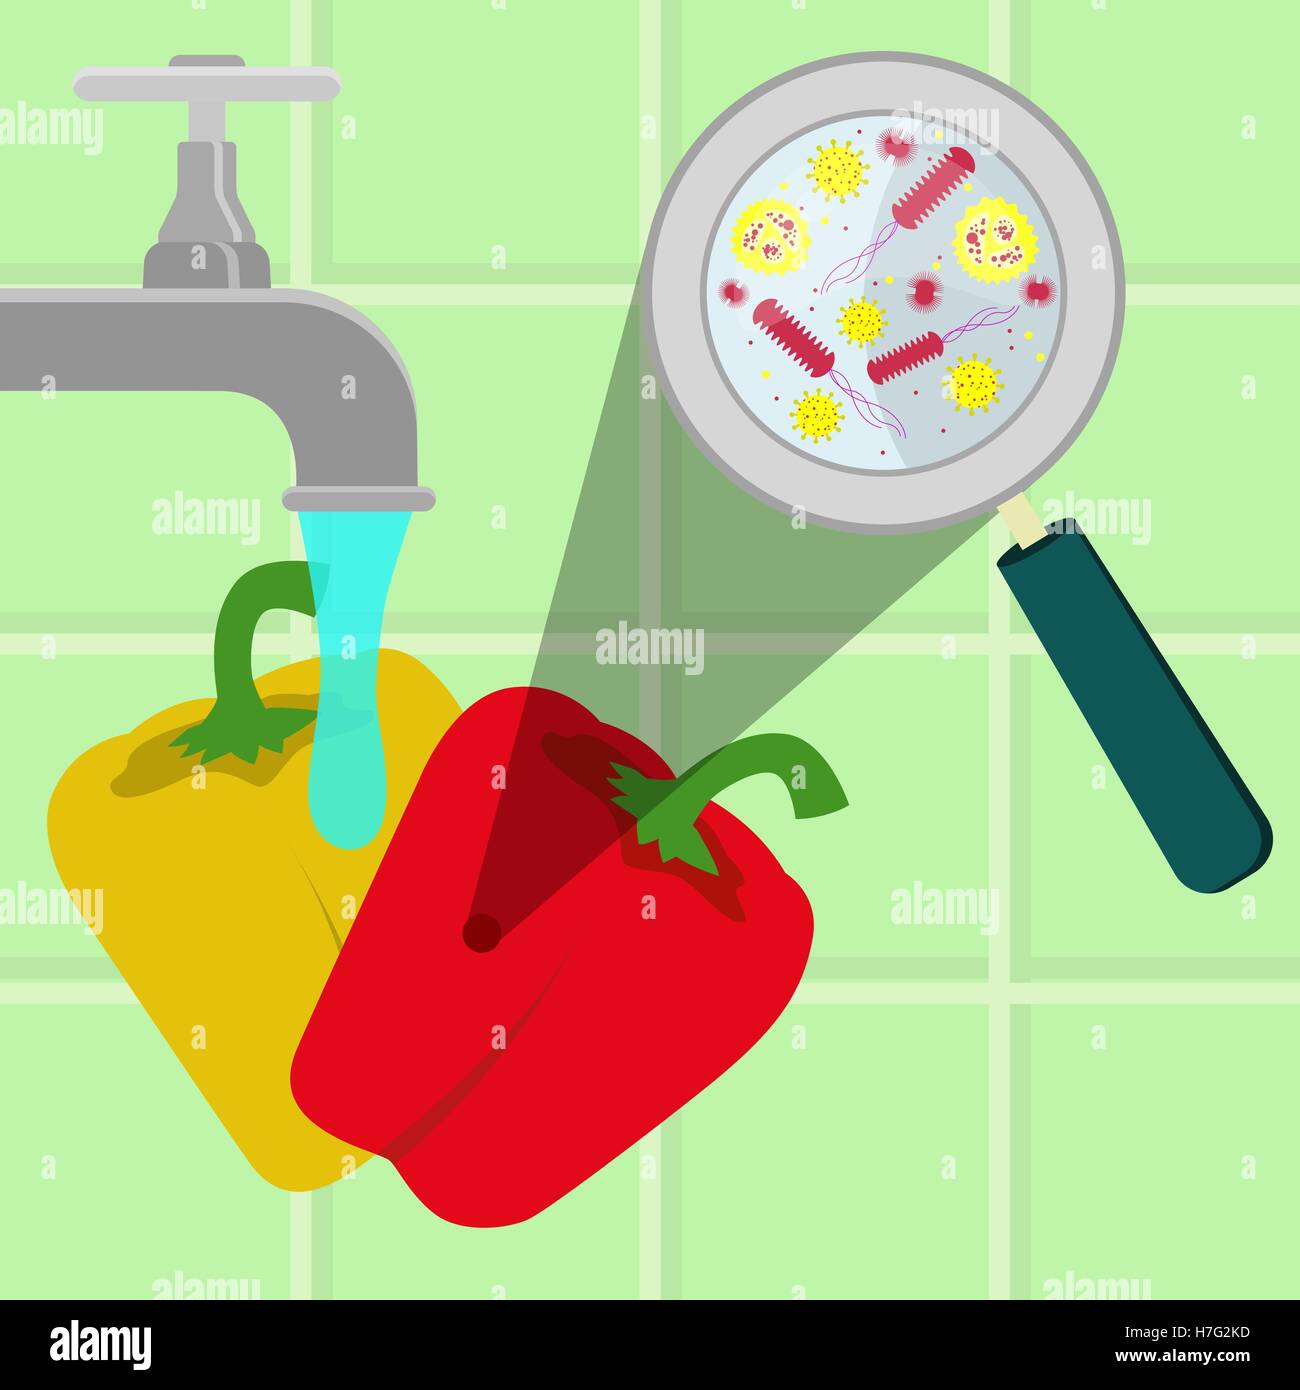 Kontaminierte Paprika wird gereinigt und gewaschen in einer Küche.  Mikroorganismen, Viren und Bakterien in das Gemüse durch vergrößert  Stock-Vektorgrafik - Alamy